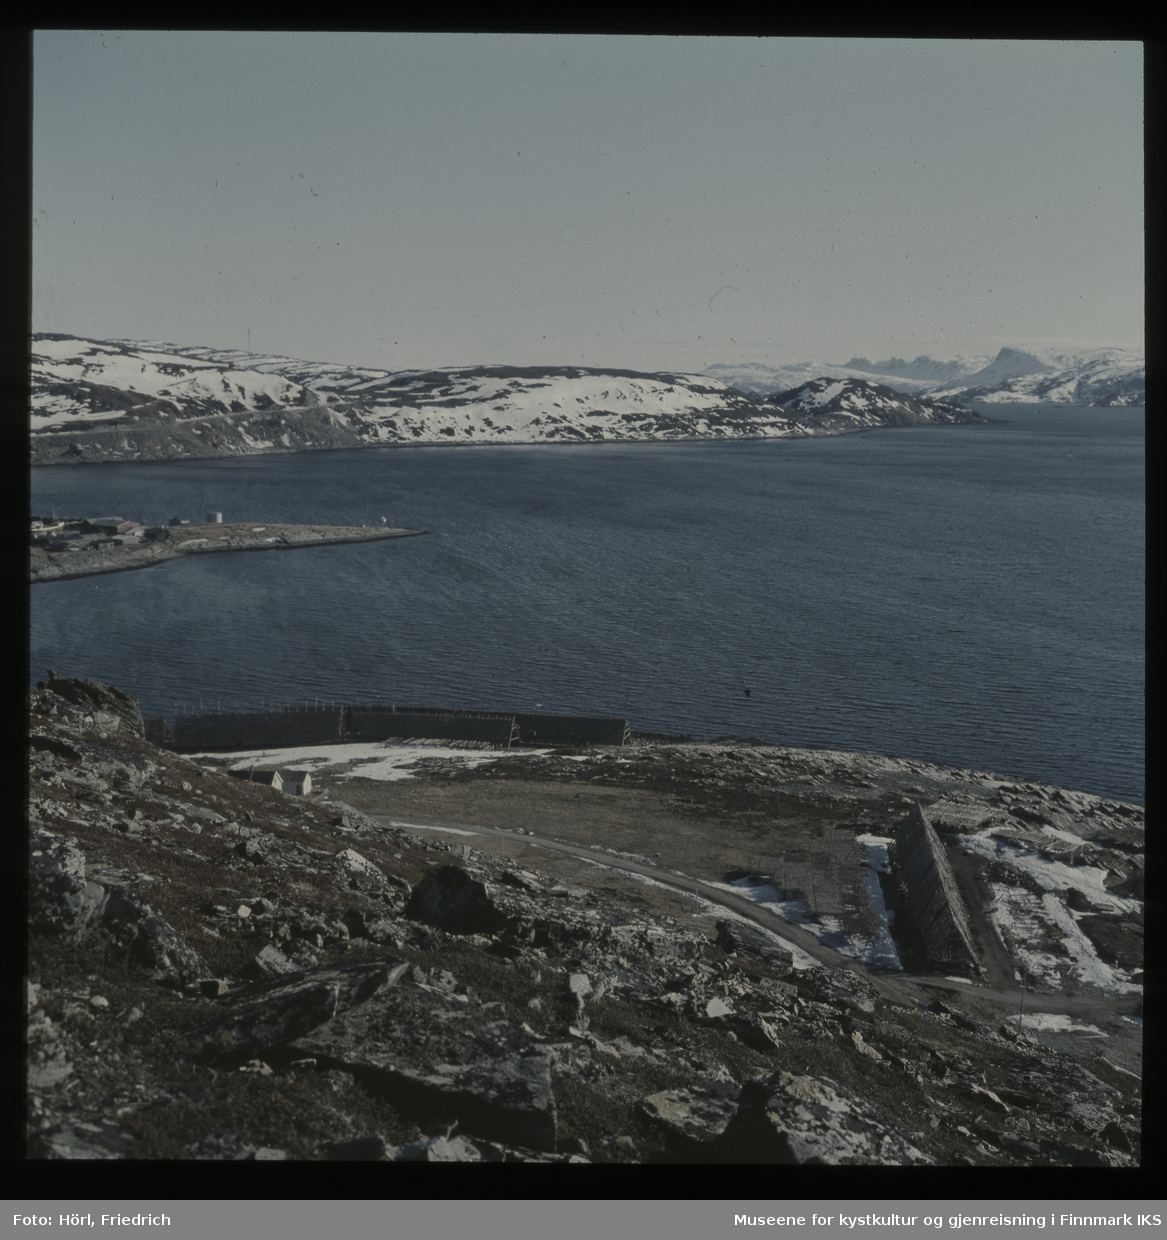 Bildet er fotografert fra Vardfjellet ovenfor Meland. I forgrunnen ser man fiskehjeller der fisken henger til tørk. Utsikten går over Rossmollbukta og innseilingen til Hammerfest havn til veien på Salenfjellet opp til Storsvingen og Rypefjellet i bakgrunn. Det ligger fortsatt snø.